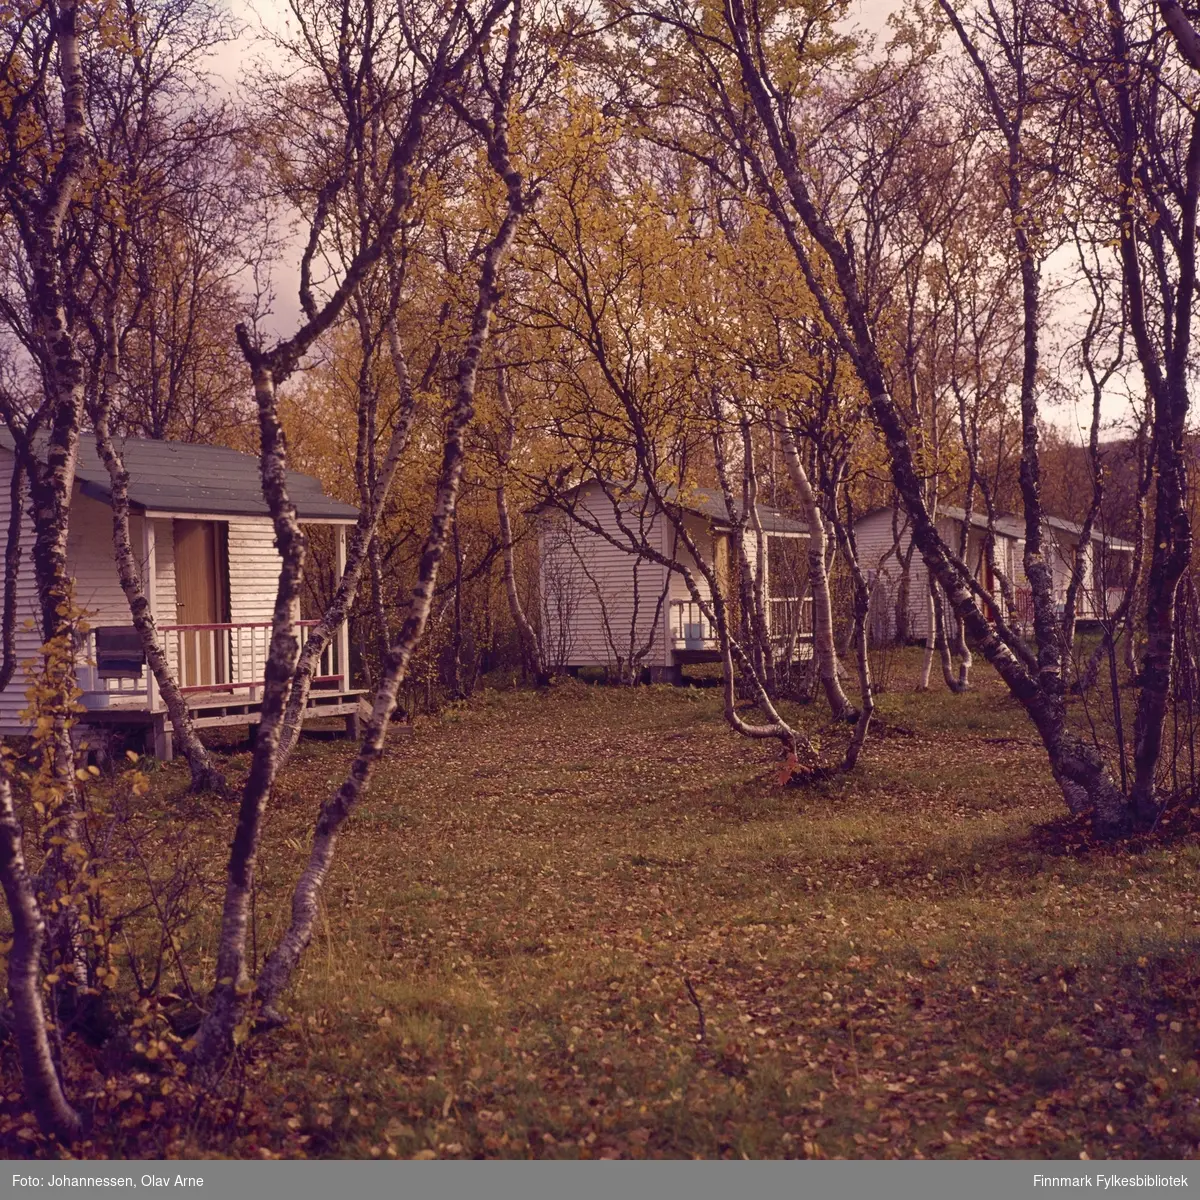 Foto av små hytter omringet av bjørk, antagelig i Finnmark 

Foto trolig tatt på 1960/70-tallet